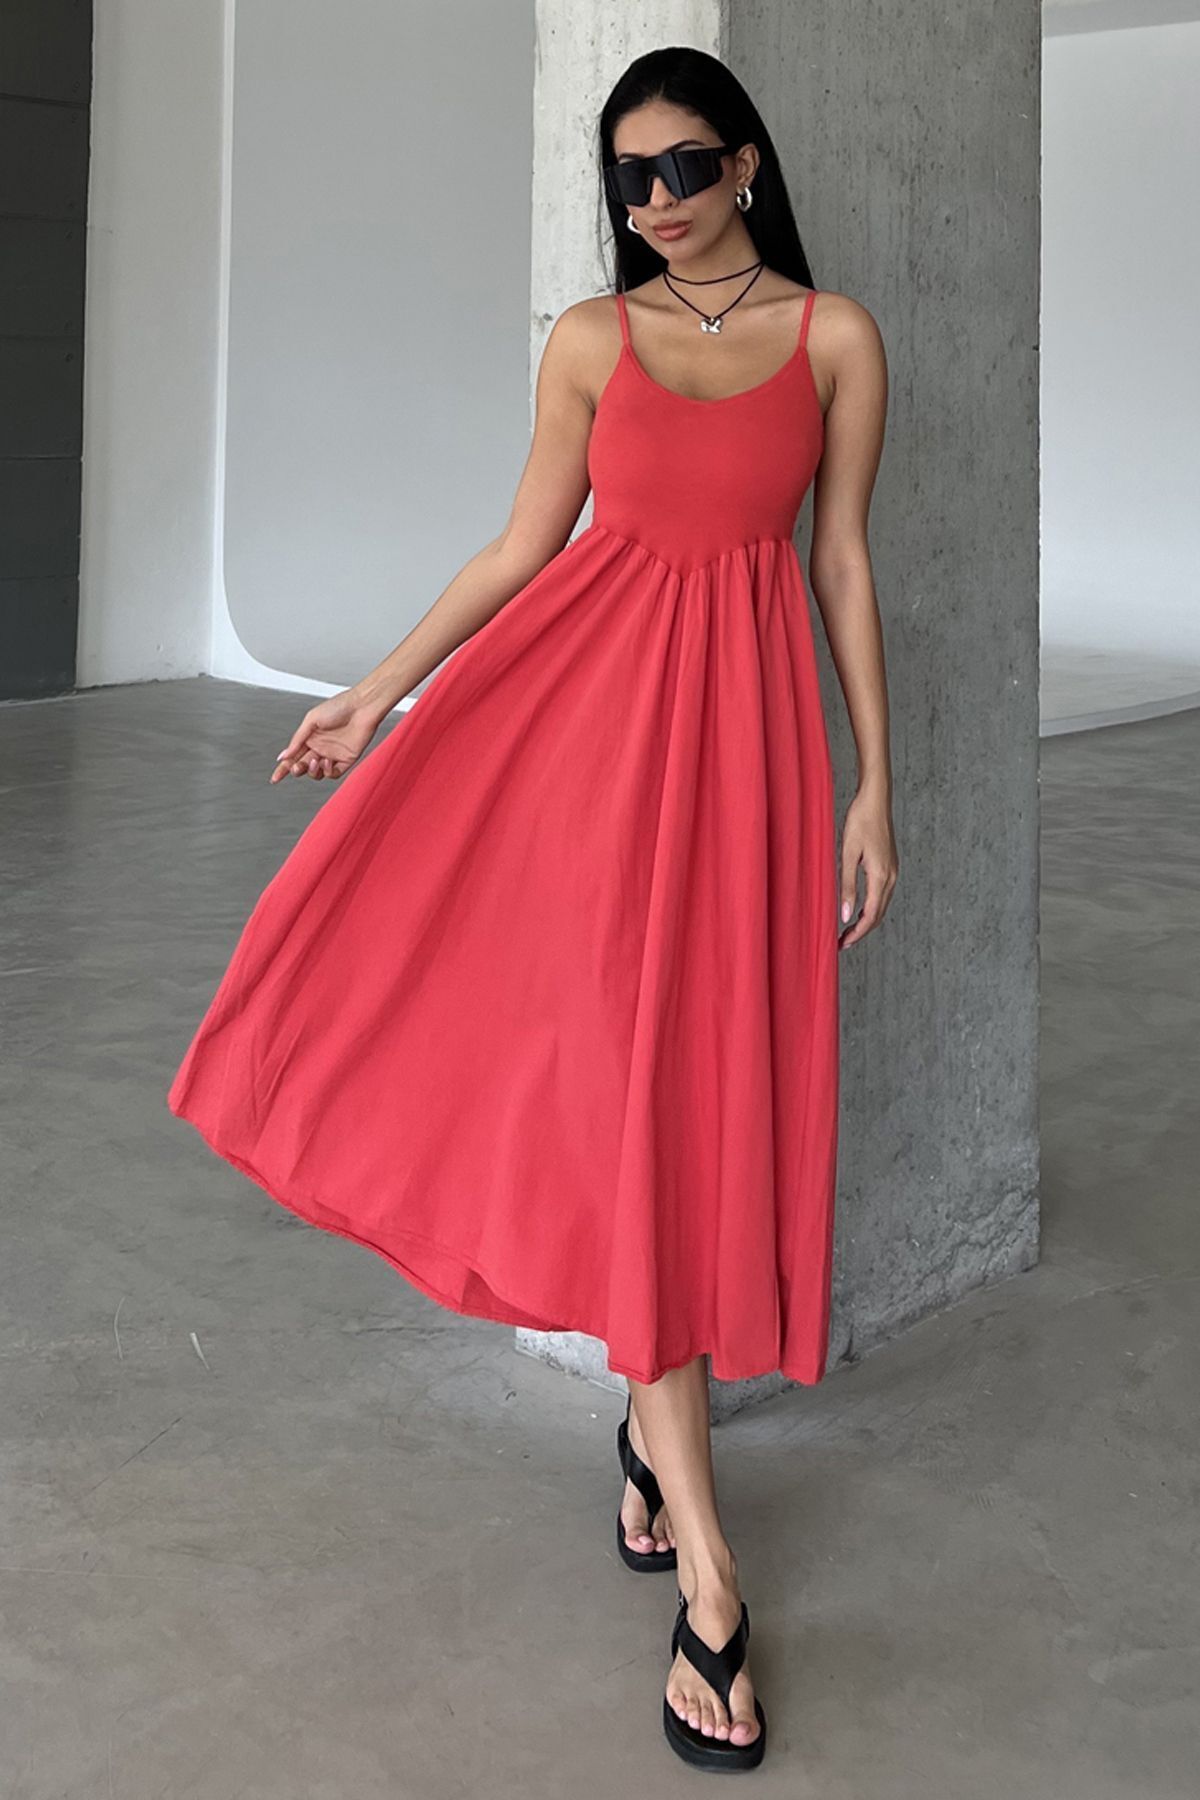 Domoda Kırmızı Ayar Askılı, Fermuarlı Üstü Fitilli Alt Kısmı Dokuma Volanlı Kadın Çan Askılı Elbise @emilia